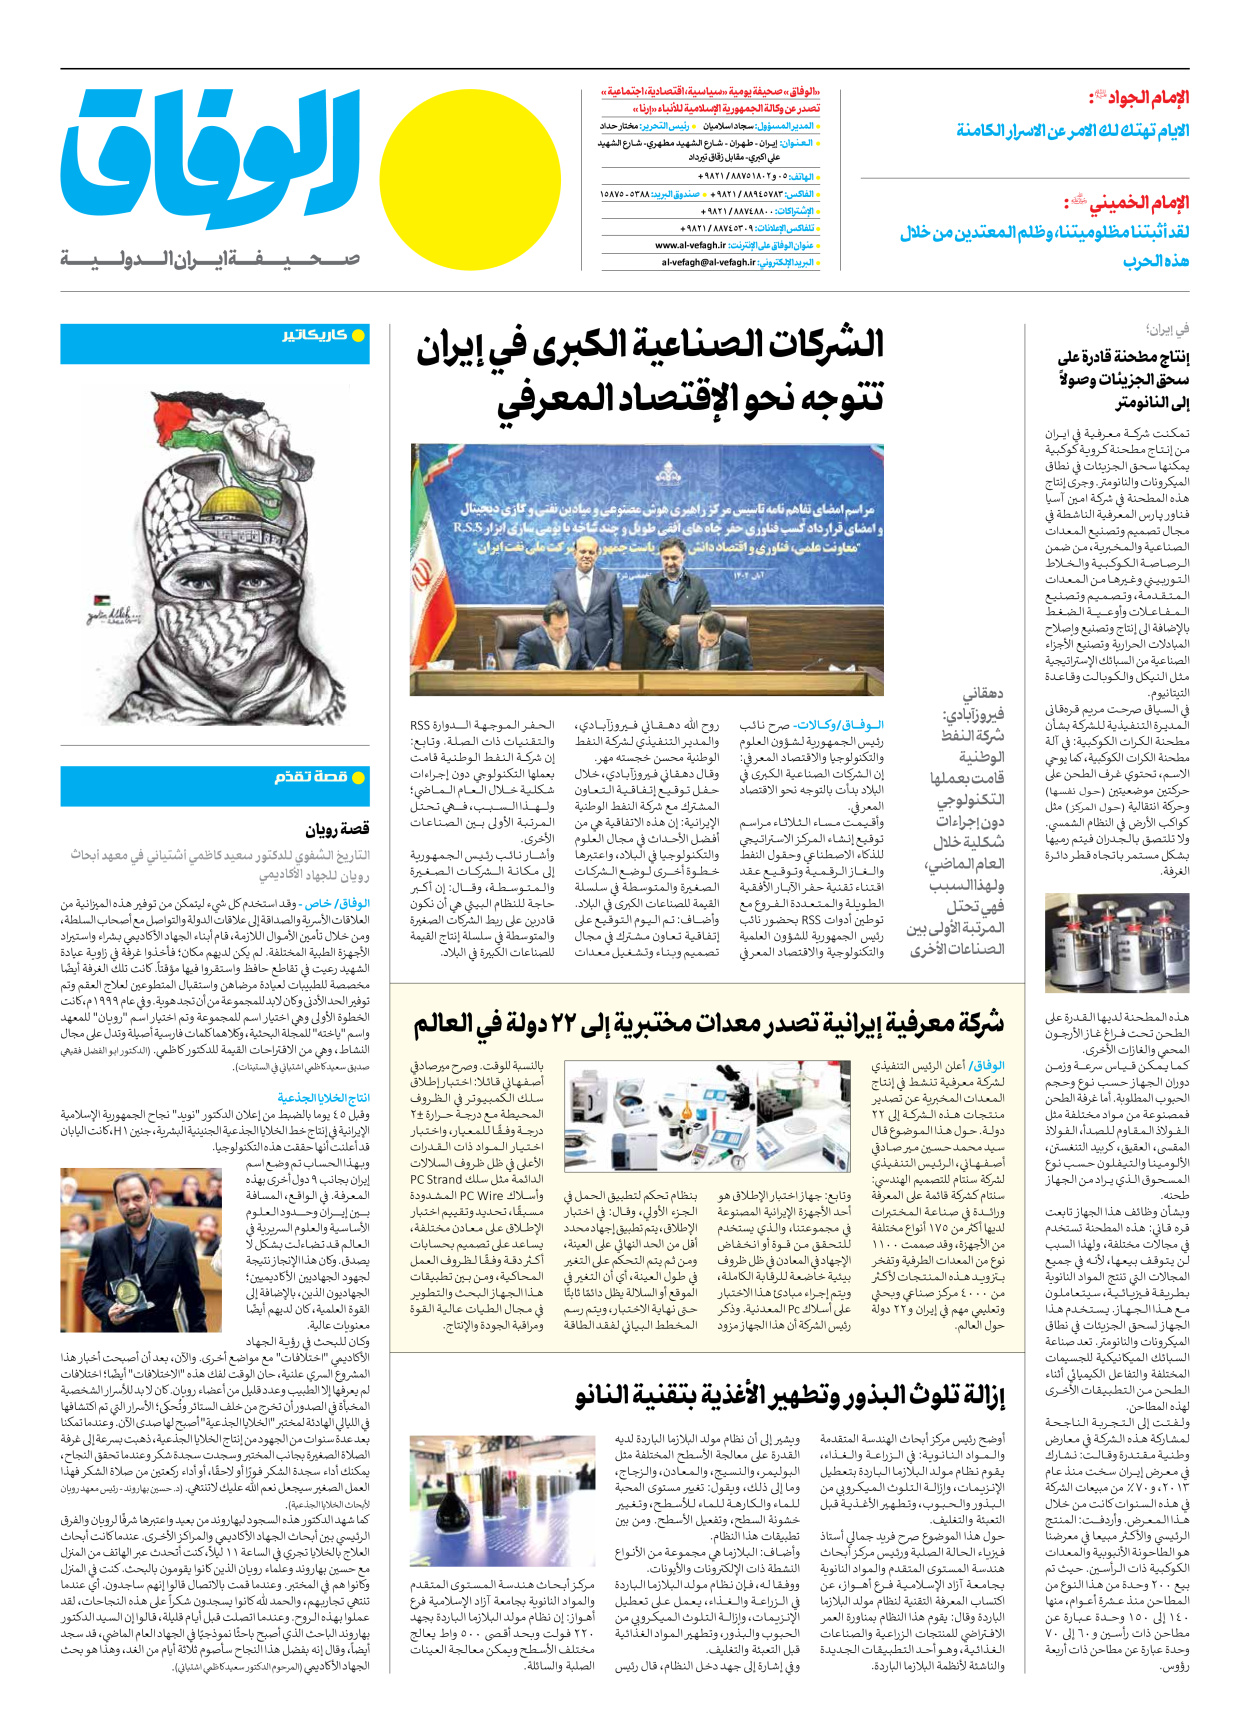 صحیفة ایران الدولیة الوفاق - العدد سبعة آلاف وثلاثمائة وثمانون - ١٦ نوفمبر ٢٠٢٣ - الصفحة ۱۲